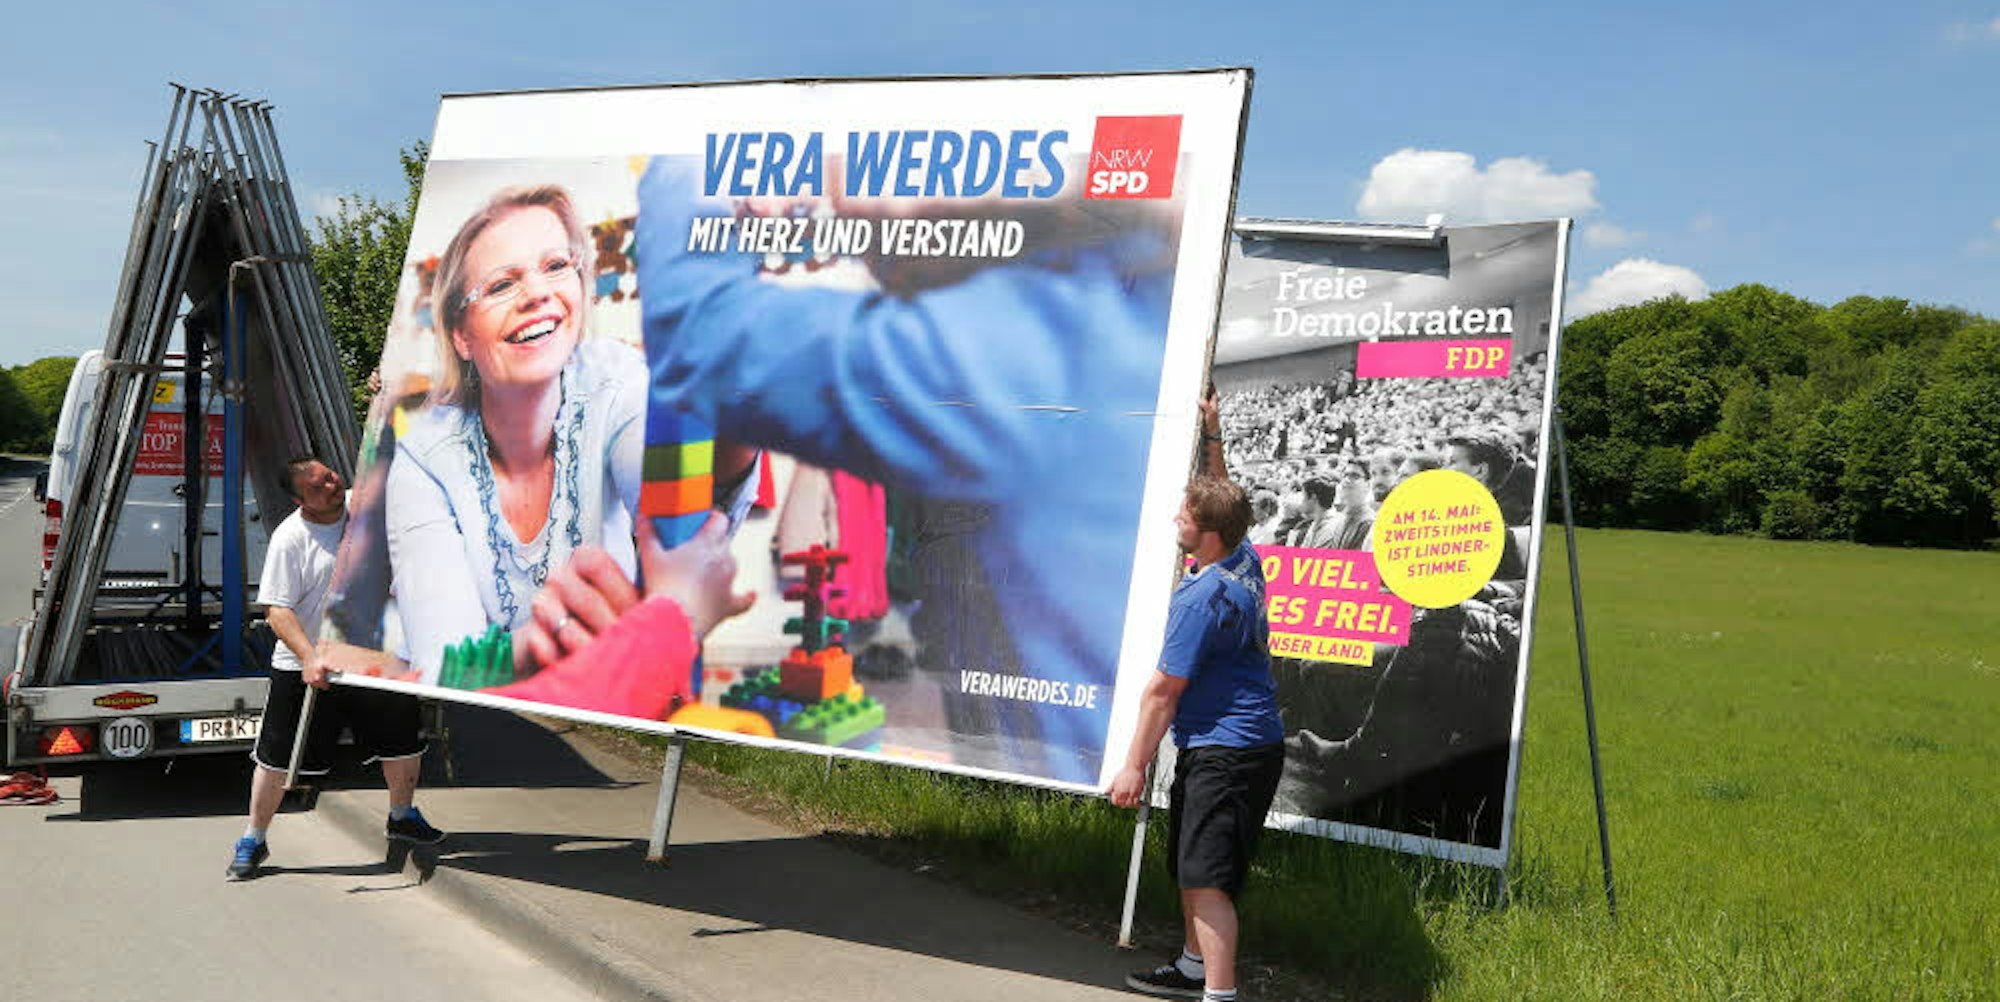 Die Wahl ist vorbei und die Plakatständer werden abgebaut: Vera Werdes (SPD) landet auf dem Transporter.